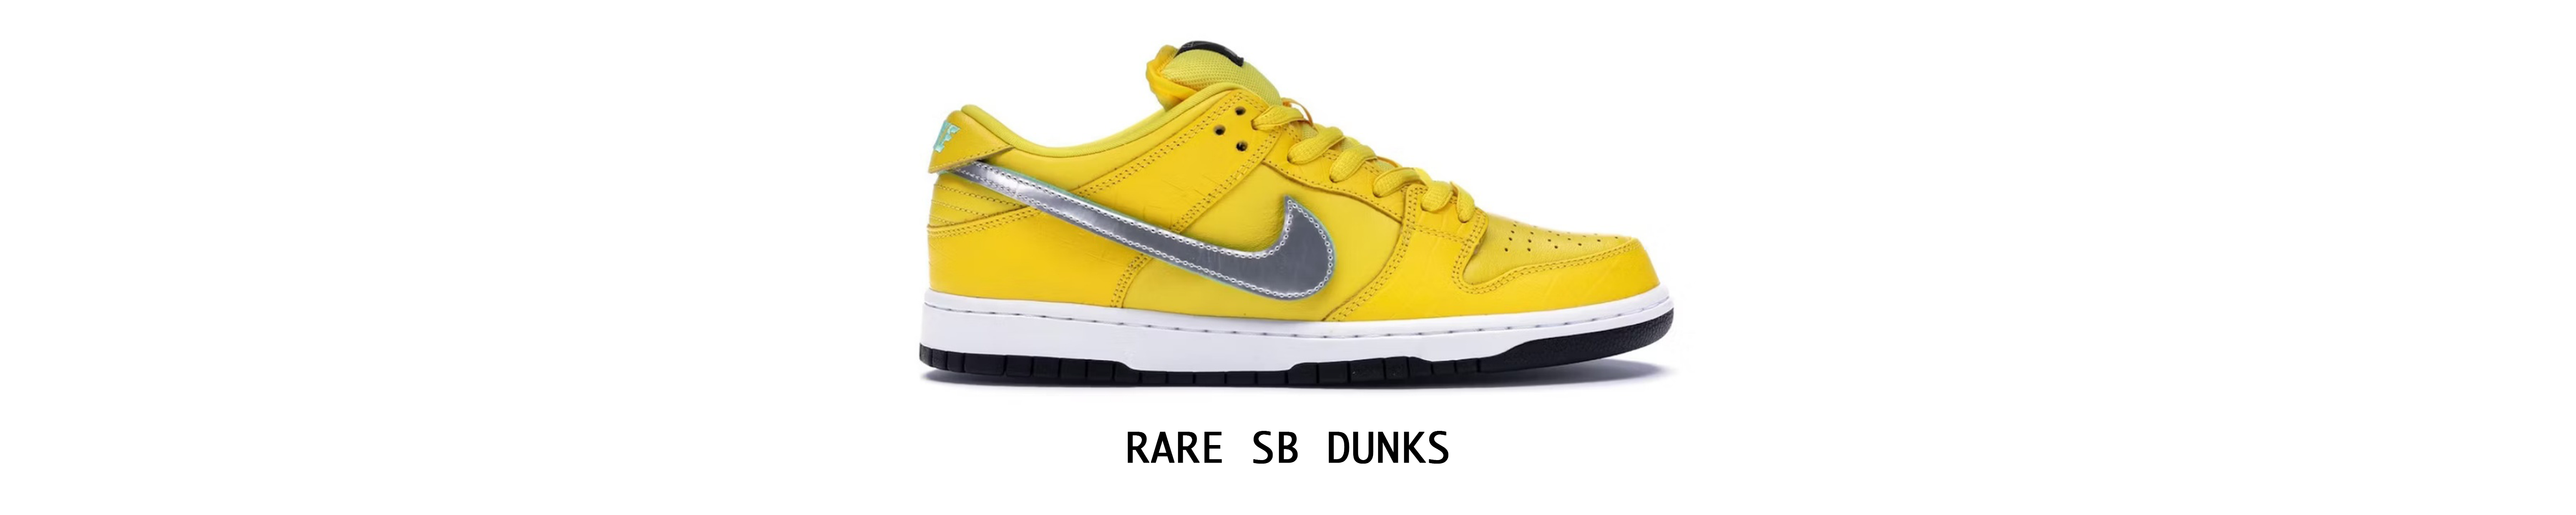 Rare Nike talla SB Dunks